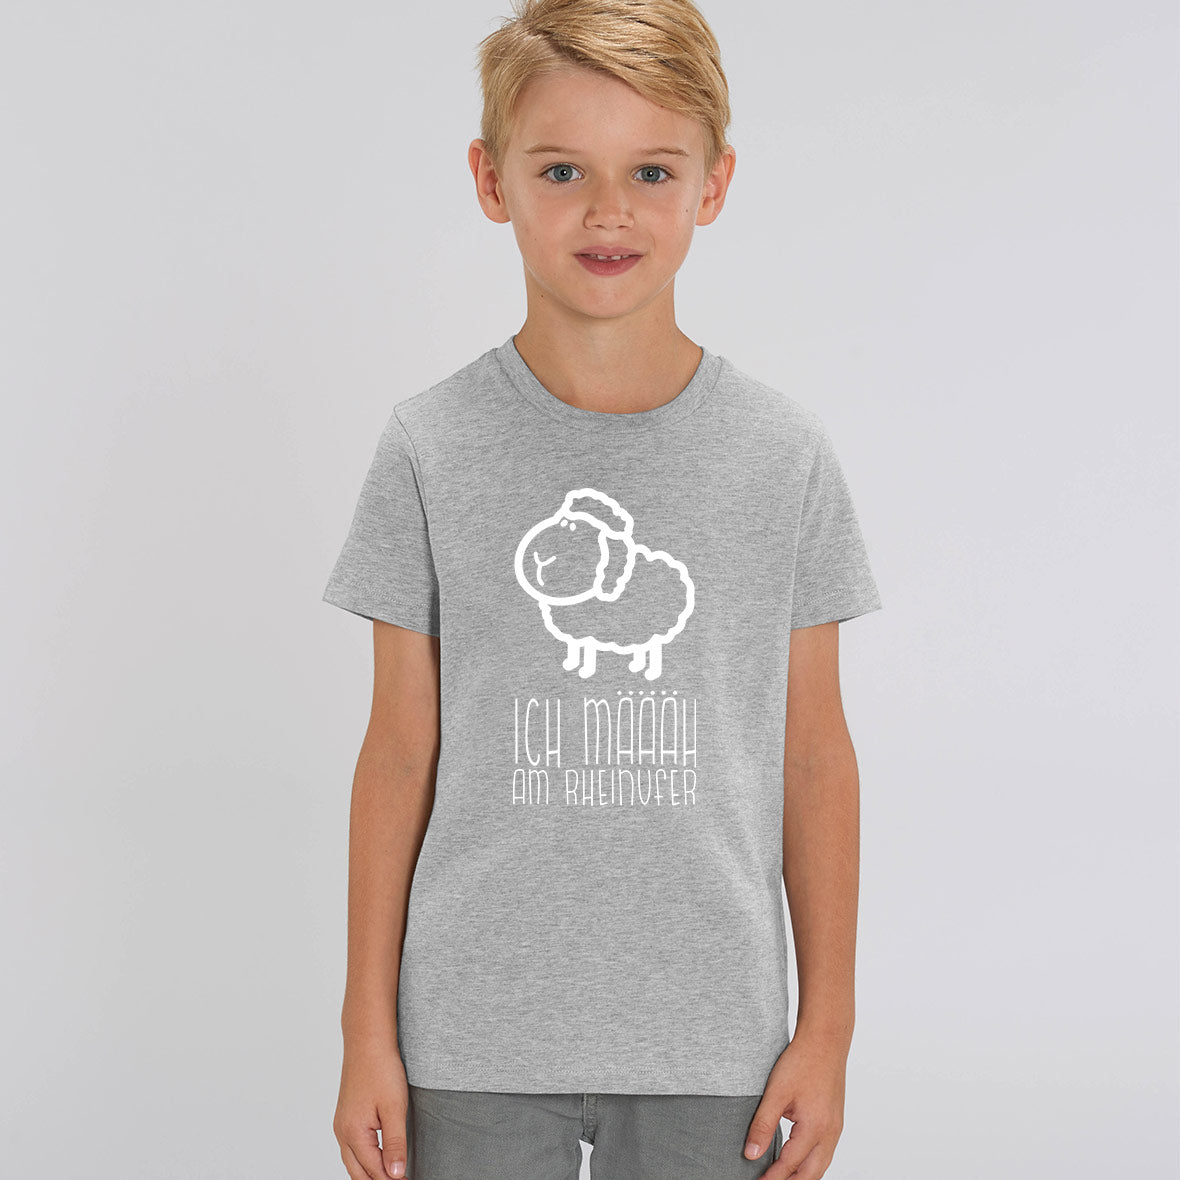 Rheinmäääher Rheinufer – Kinder T-Shirt